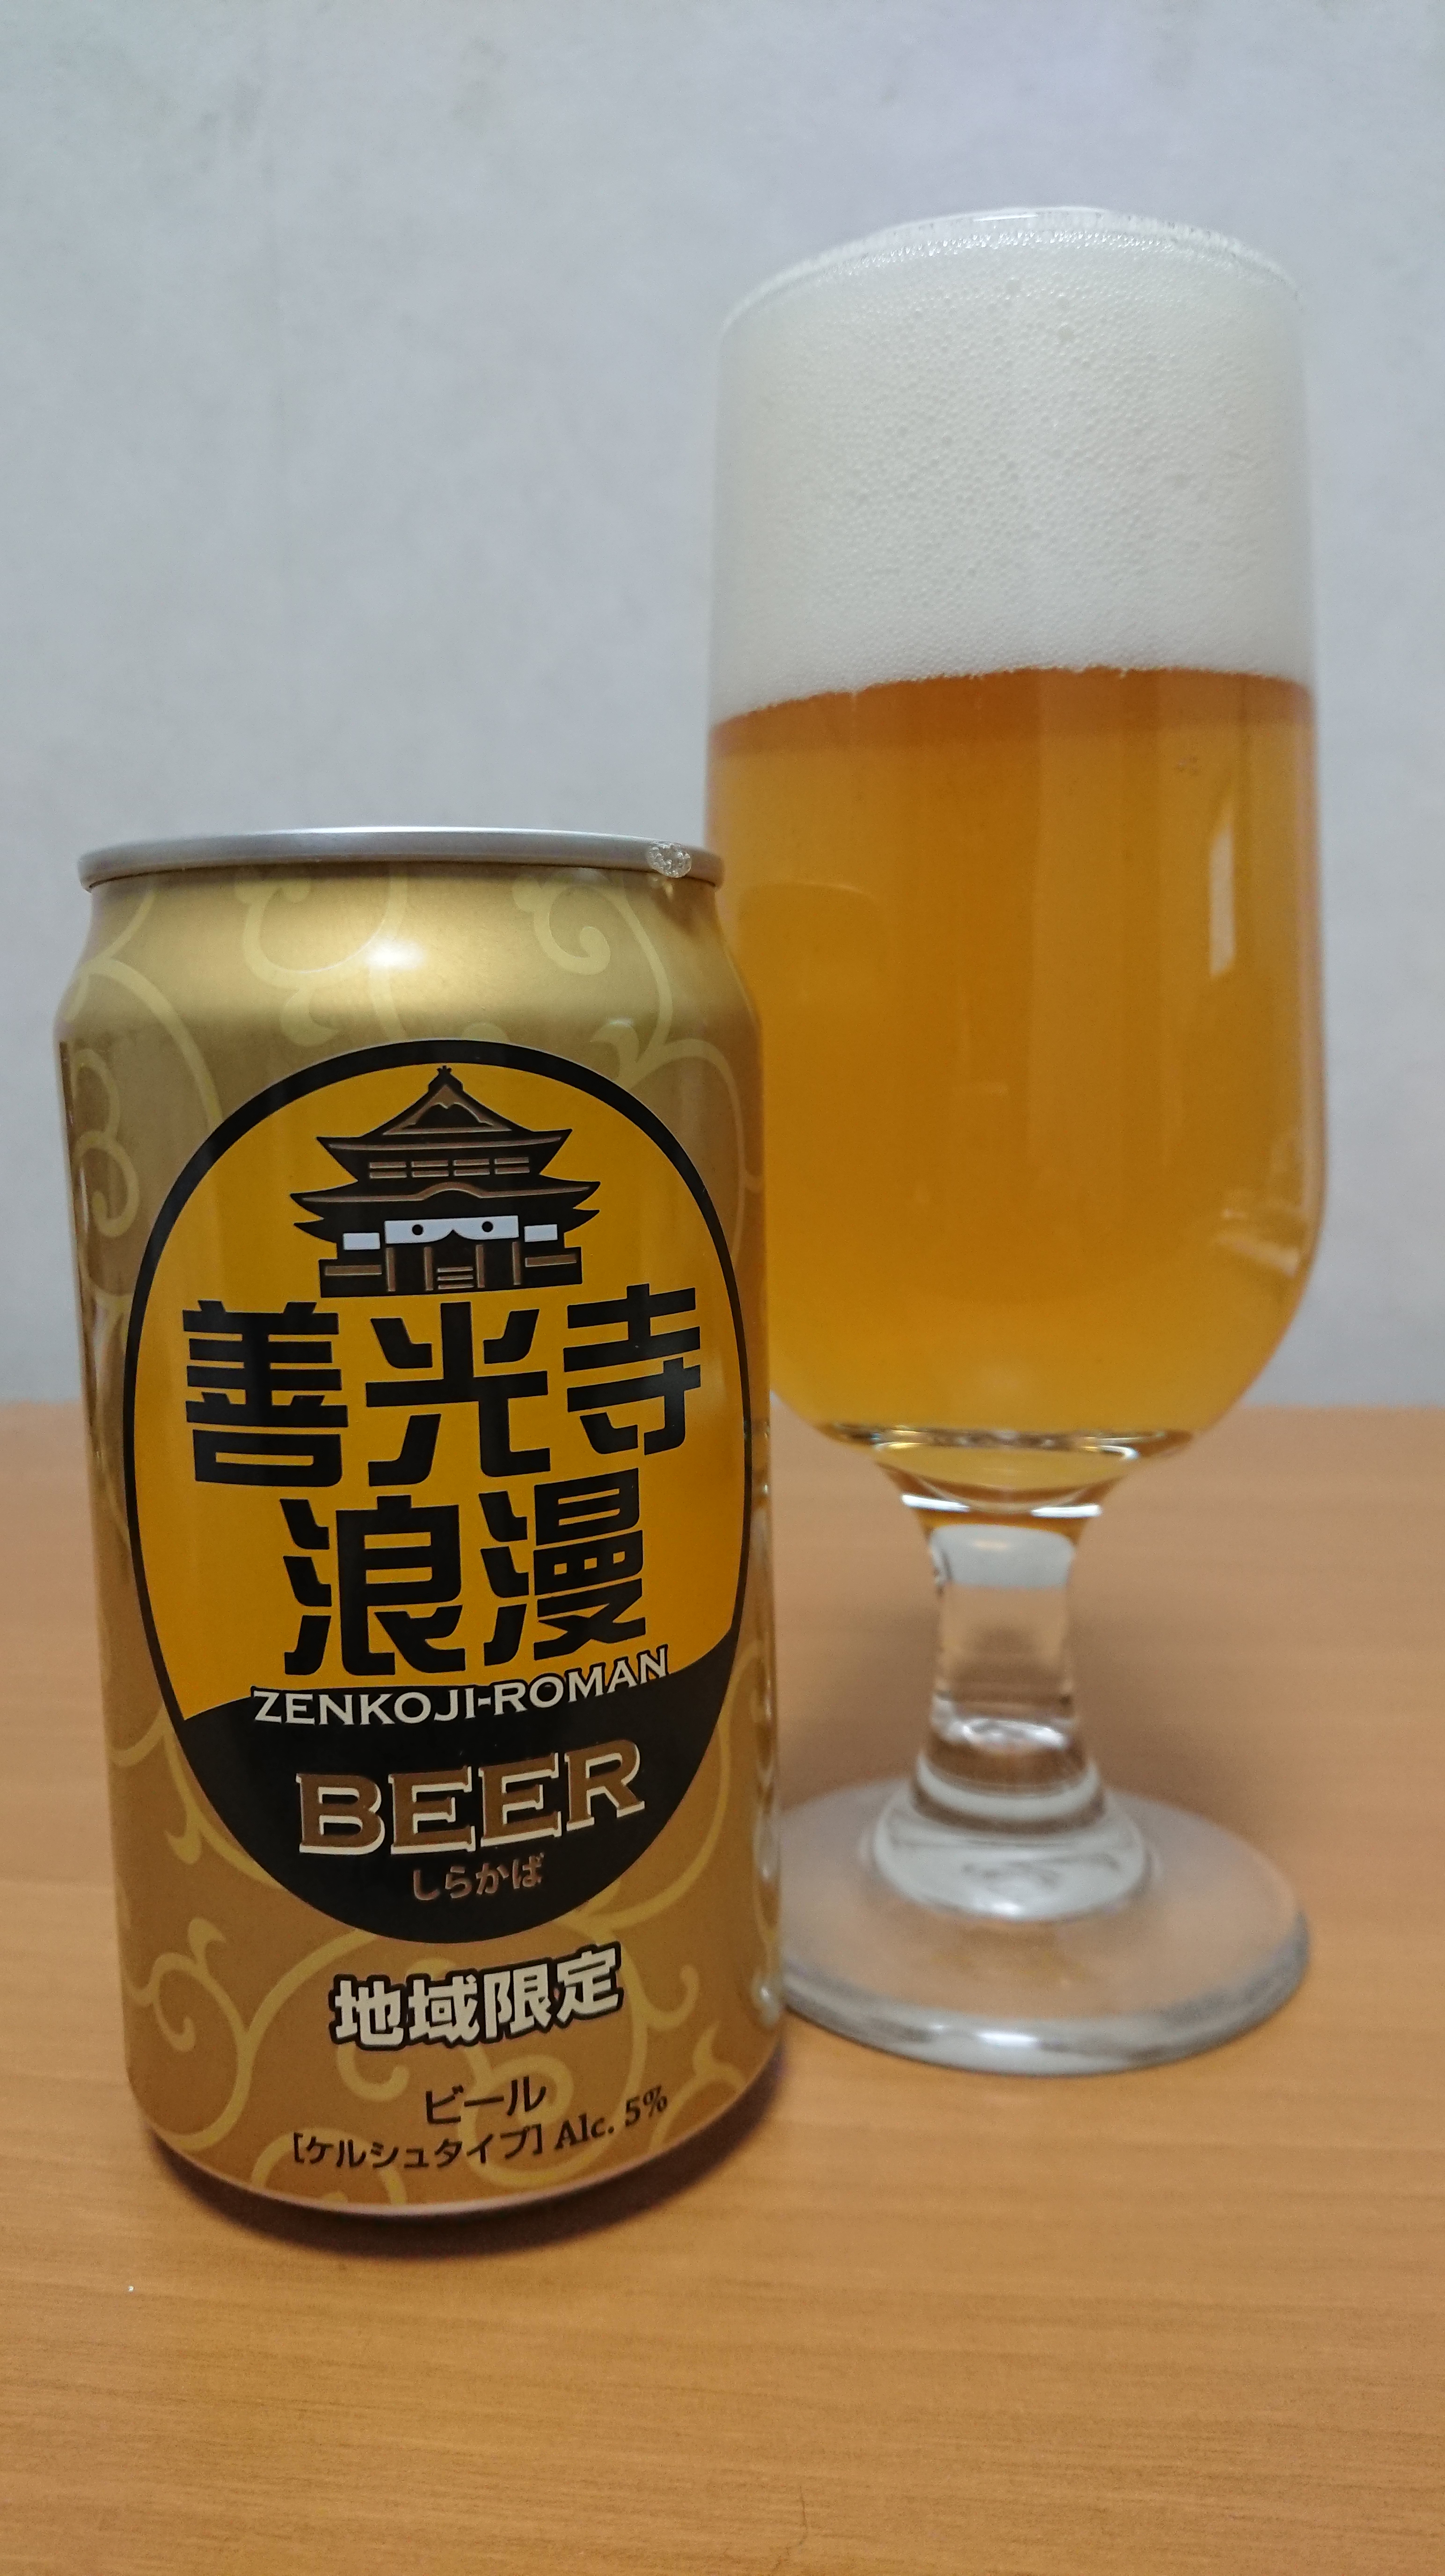 スワンレイクビール -越乃米 こしひかり仕込みビール- レビュー・感想